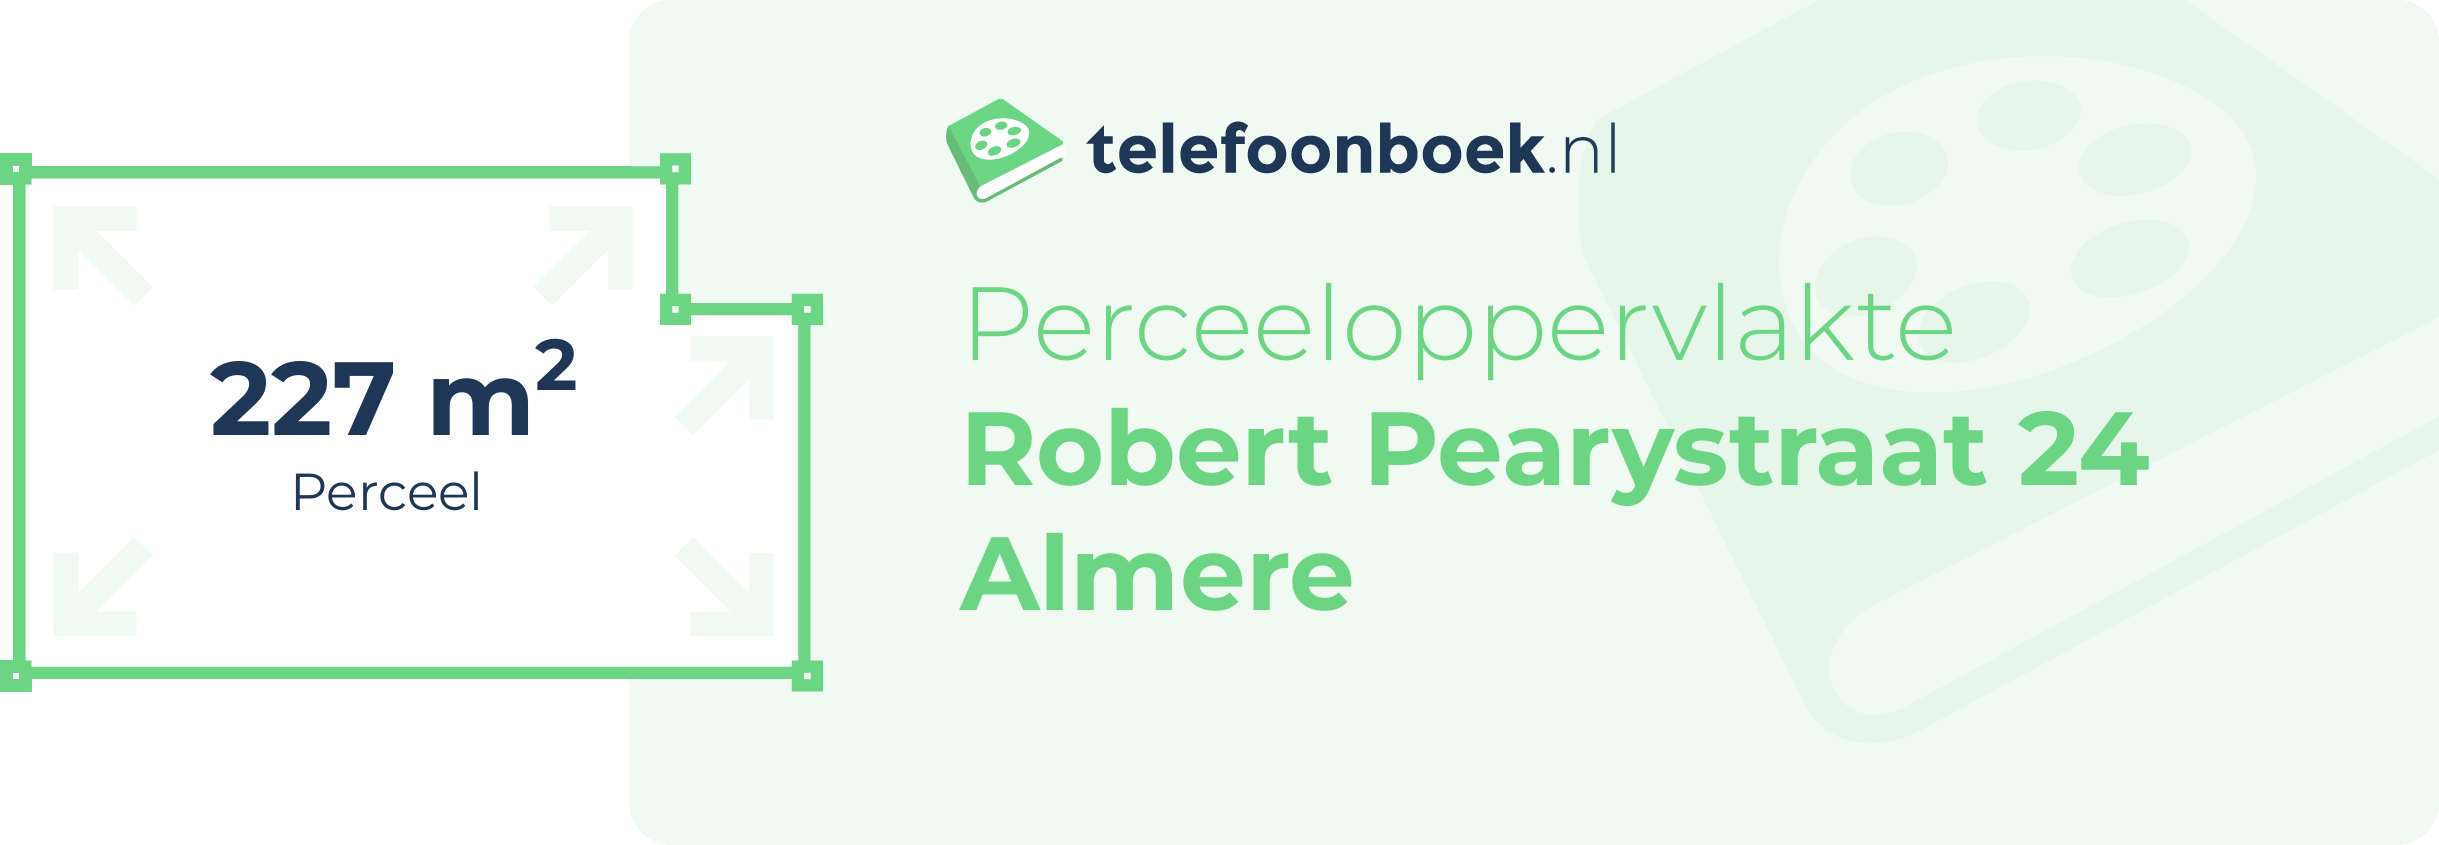 Perceeloppervlakte Robert Pearystraat 24 Almere